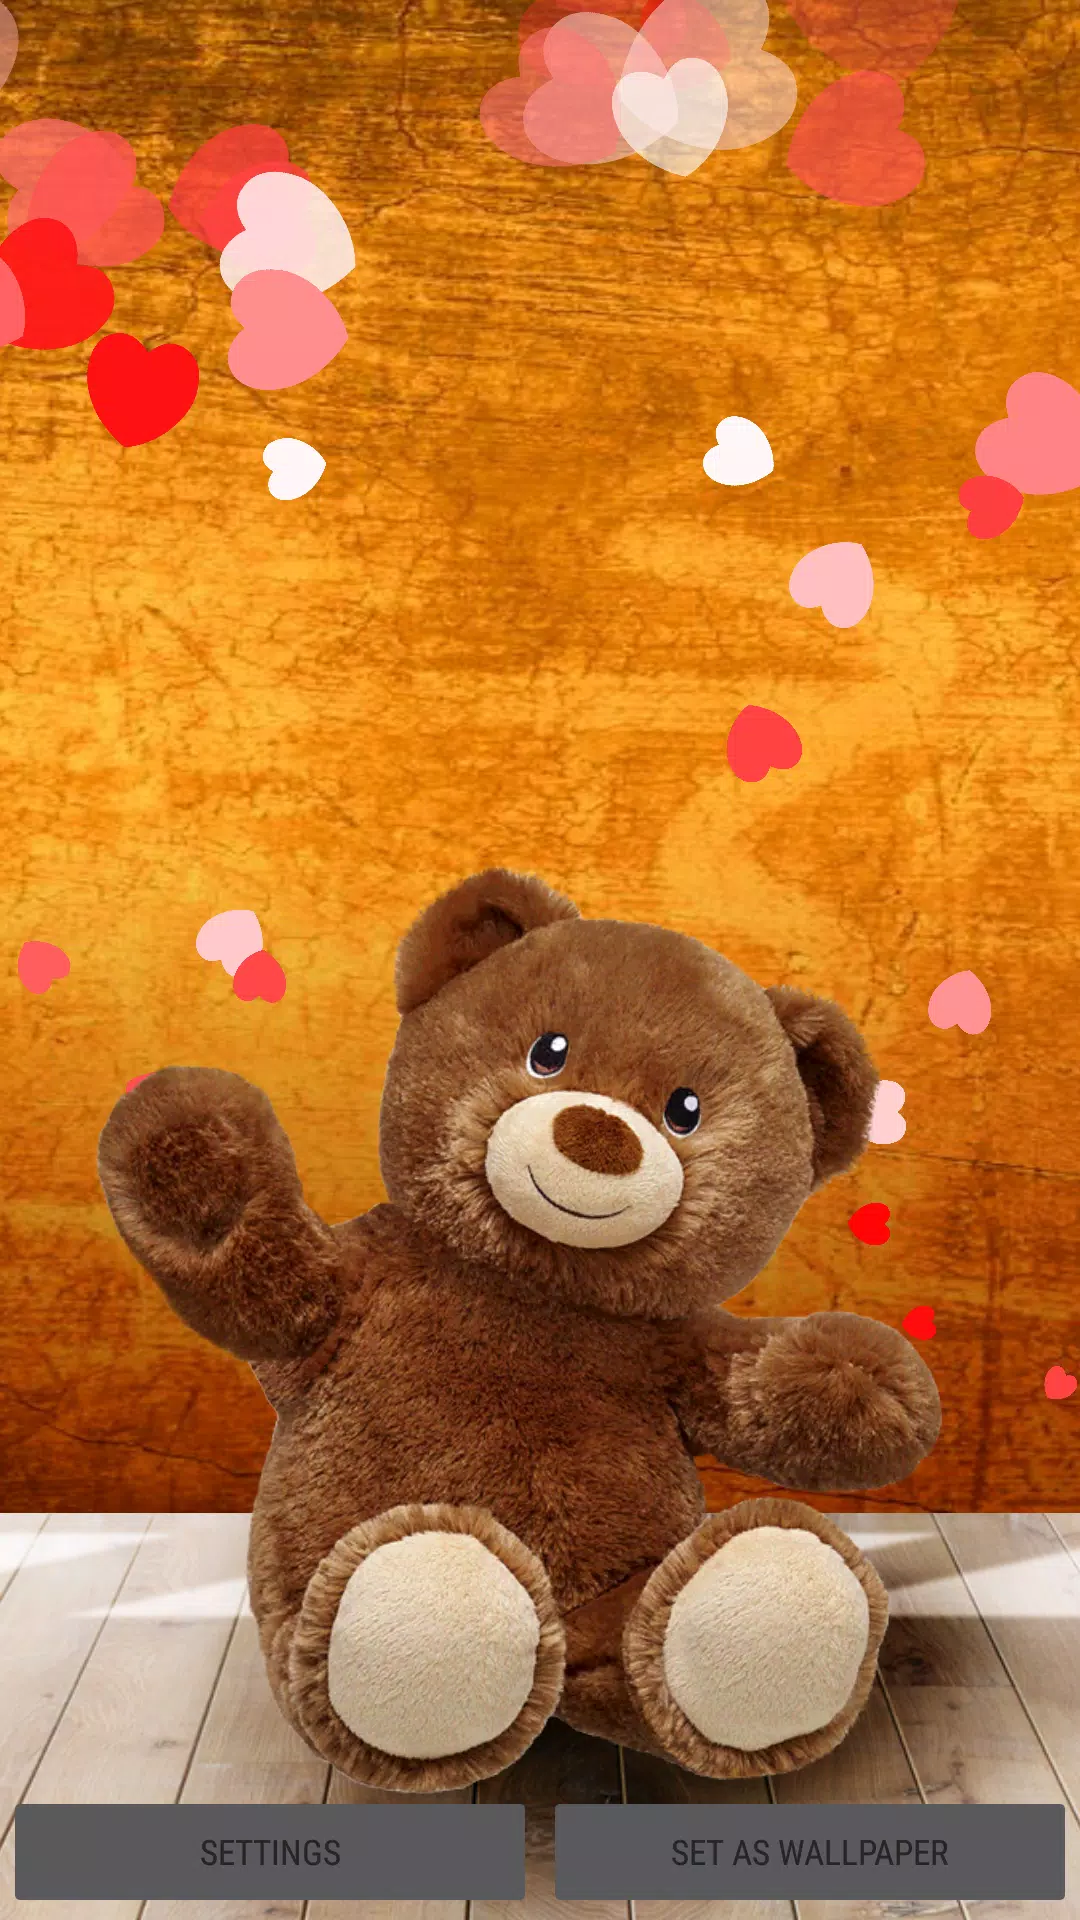 Hình nền gấu bông: Đừng bỏ qua cơ hội có được hình nền gấu bông siêu đáng yêu trang trí cho điện thoại của bạn. Nhấp vào ảnh để xem ngay!